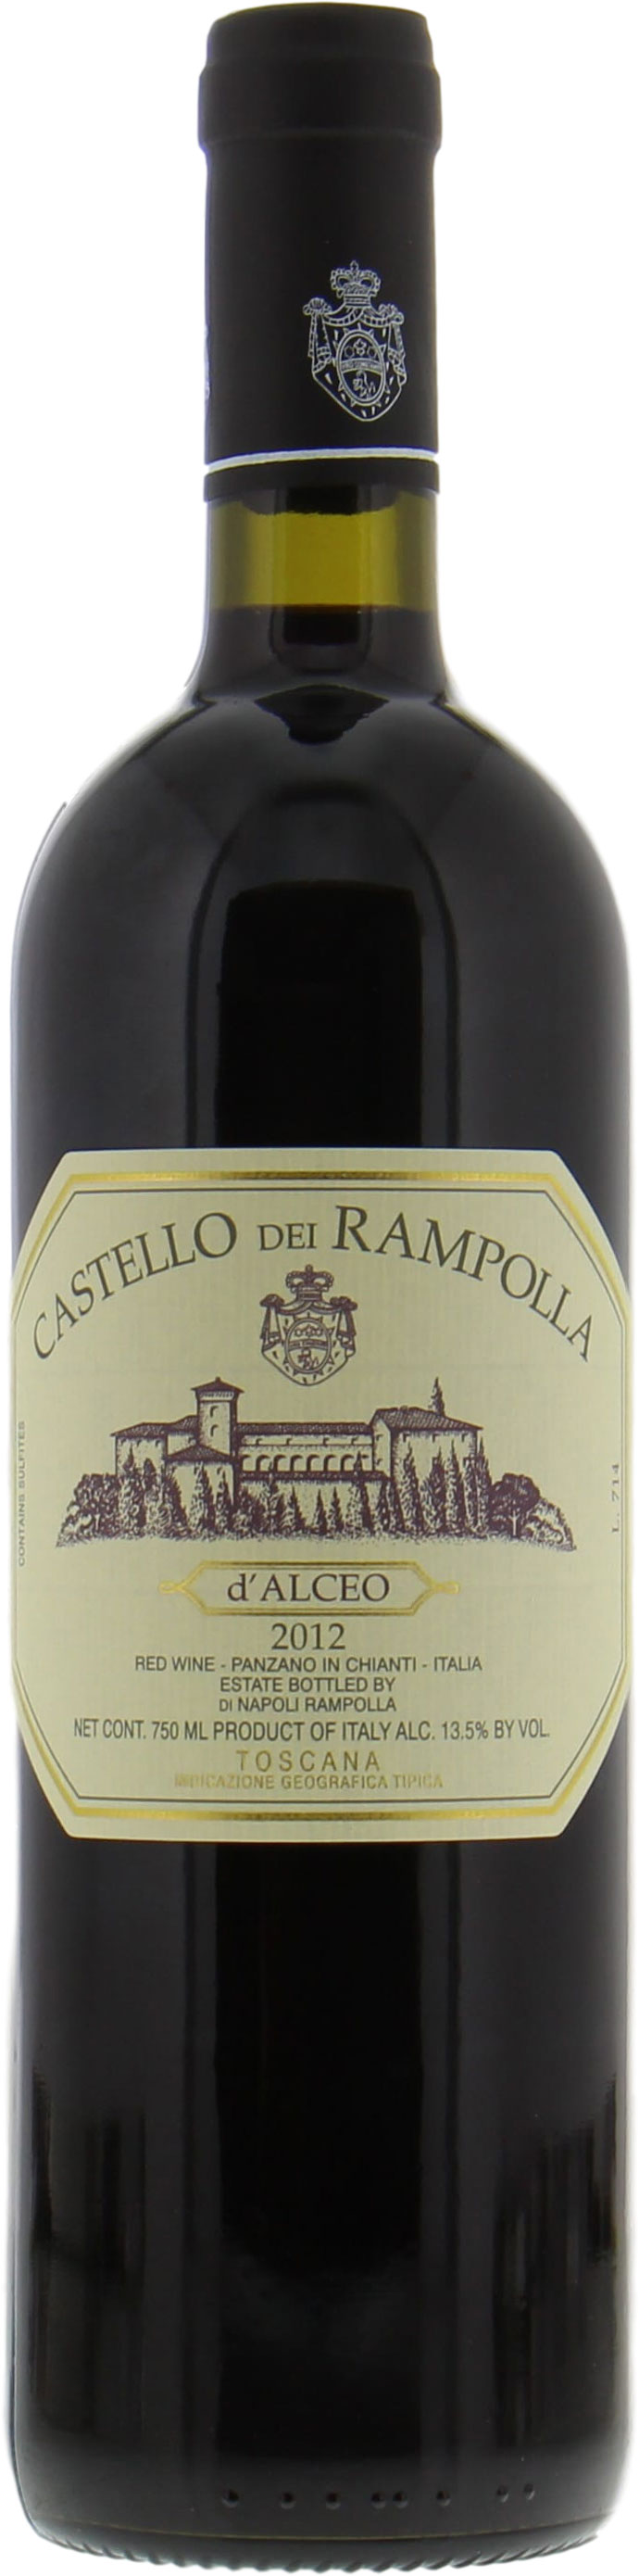 Castello dei Rampolla - Vigna d'Alceo Vino da Tavola 2012 Perfect